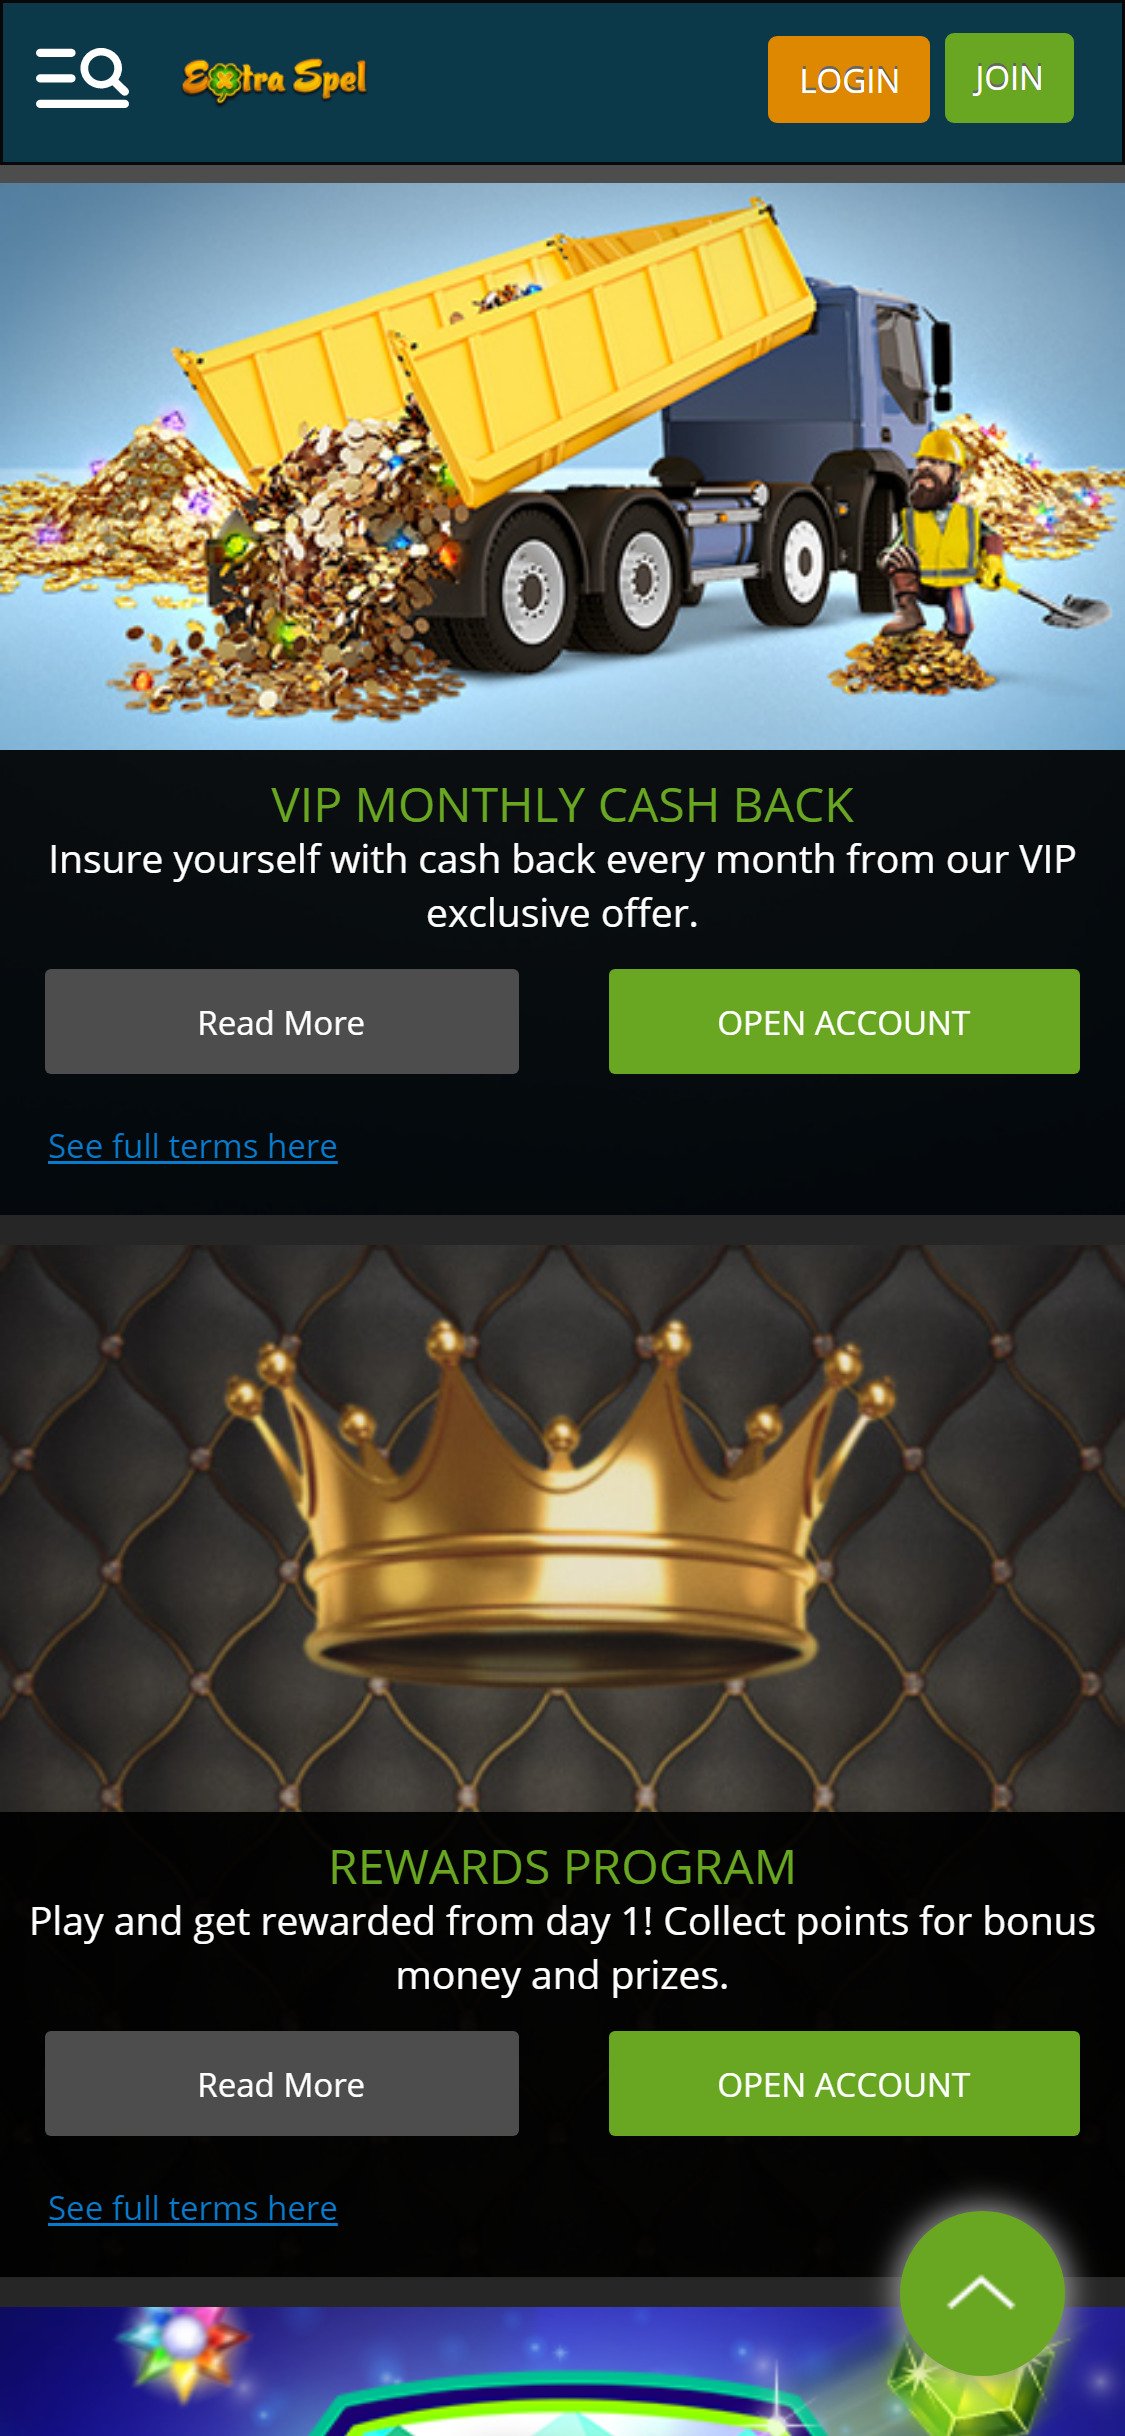 Extra Spel Casino Mobile No Deposit Bonus Review